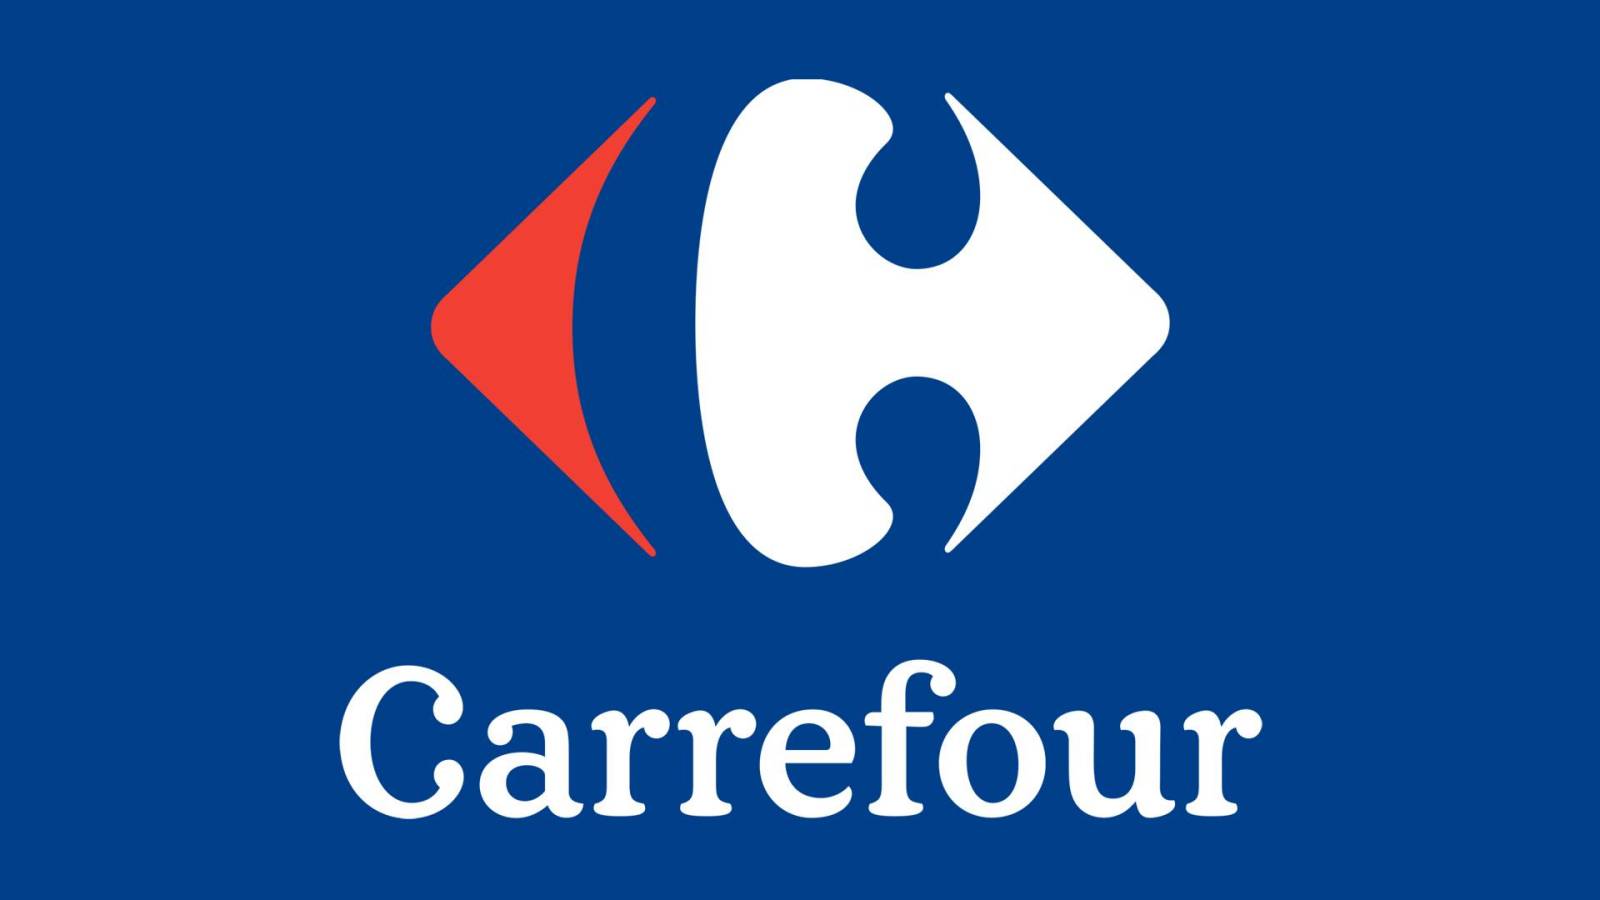 Carrefour officielle oplysninger GRATIS DACIA-bil til rumænske kunder